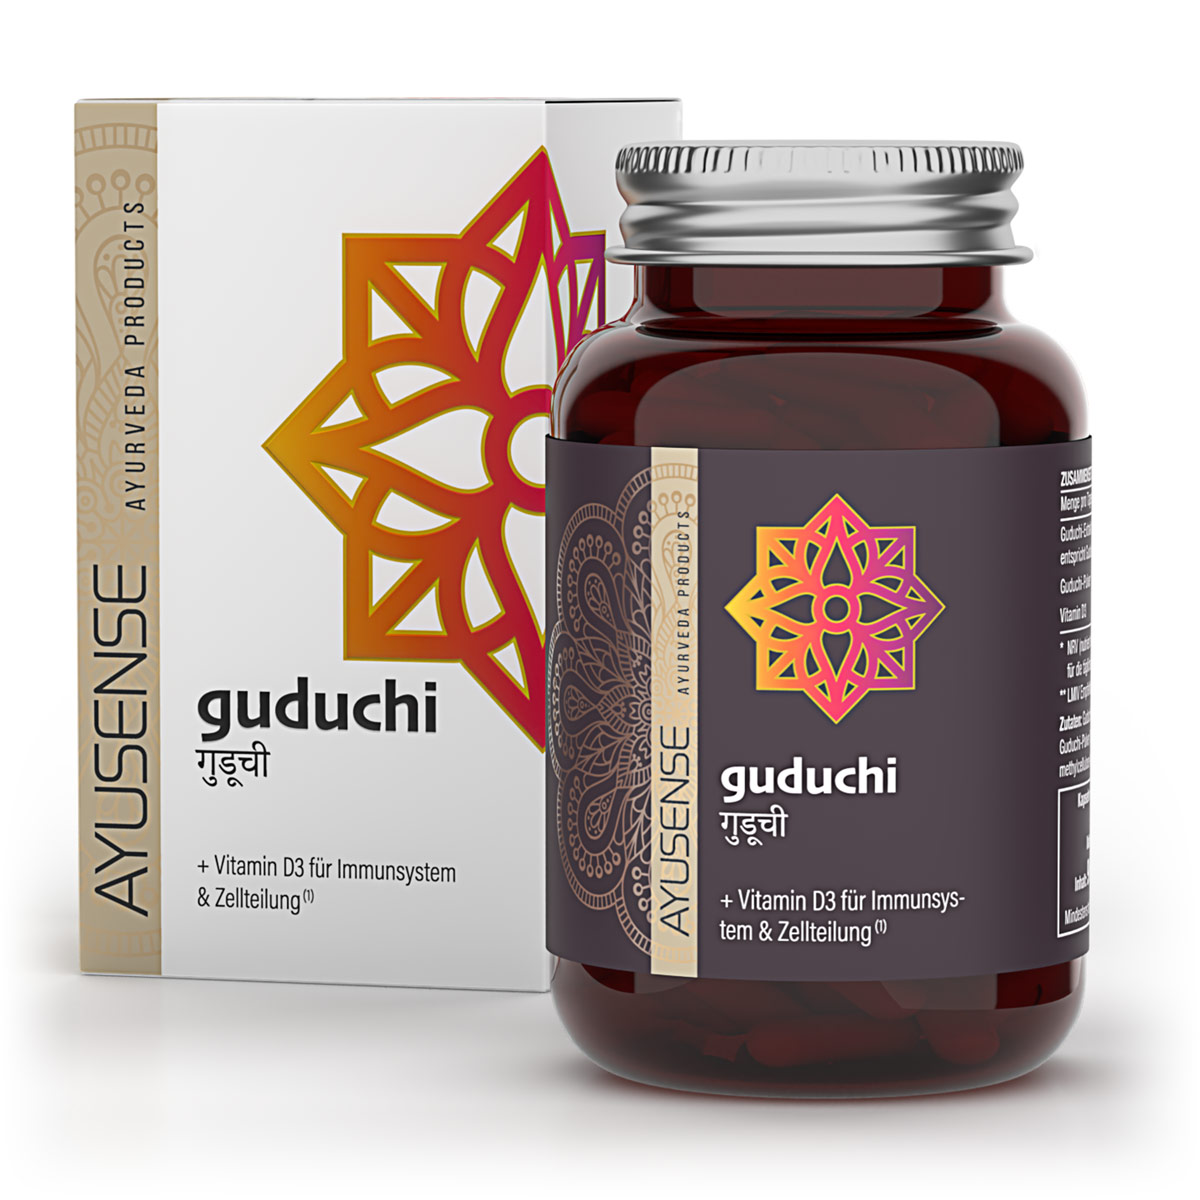 GUDUCHI Produkt